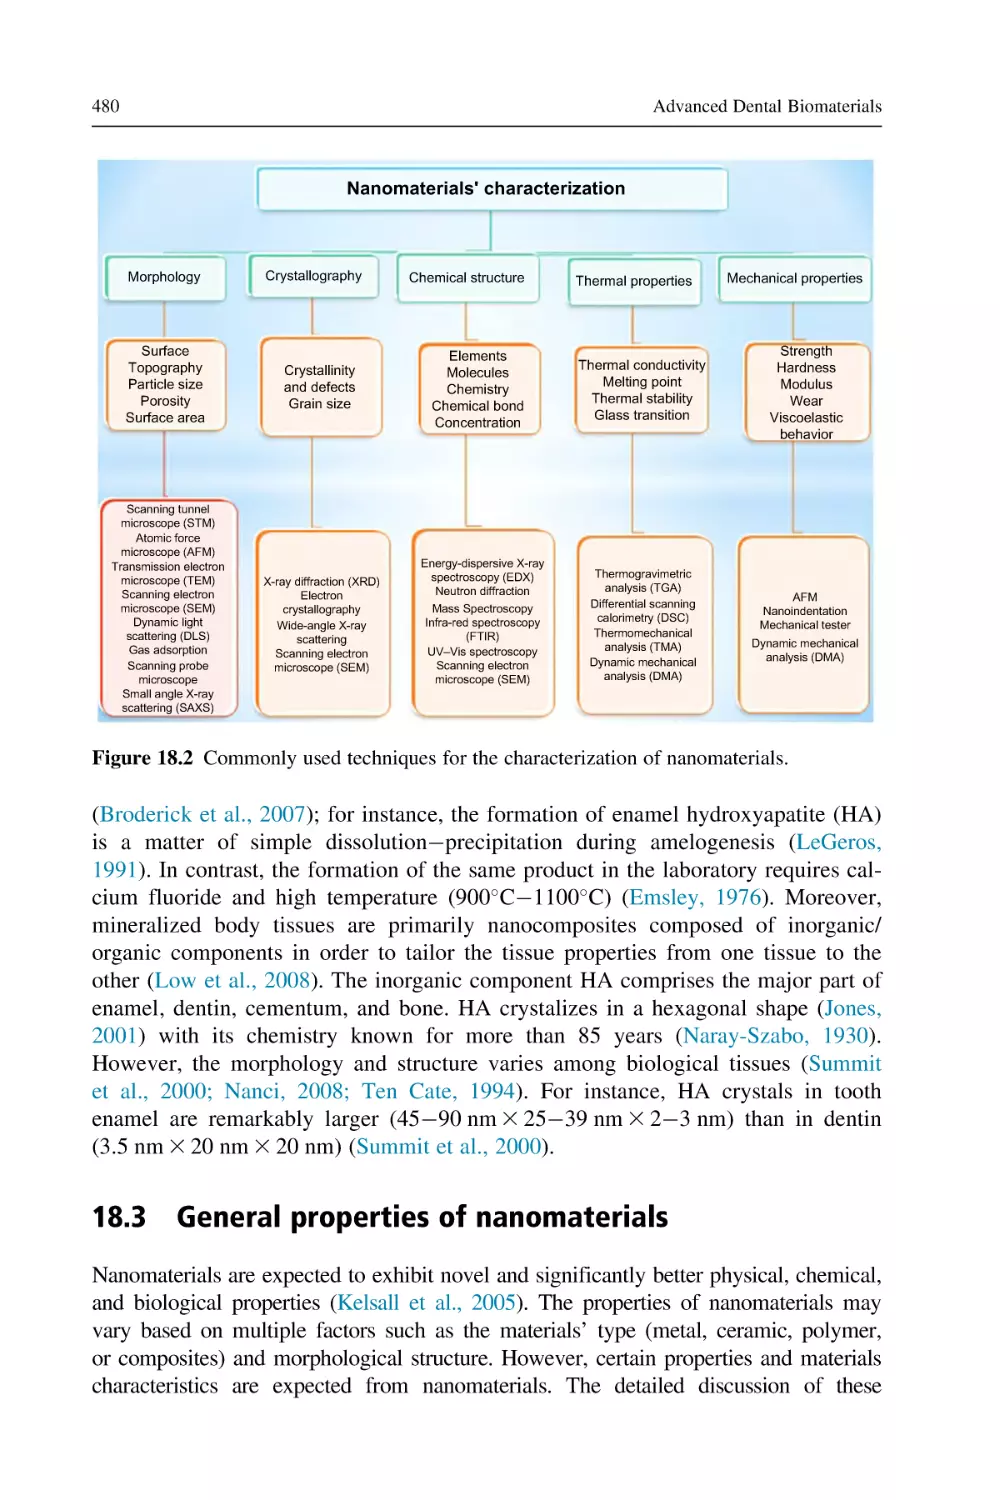 18.3 General properties of nanomaterials